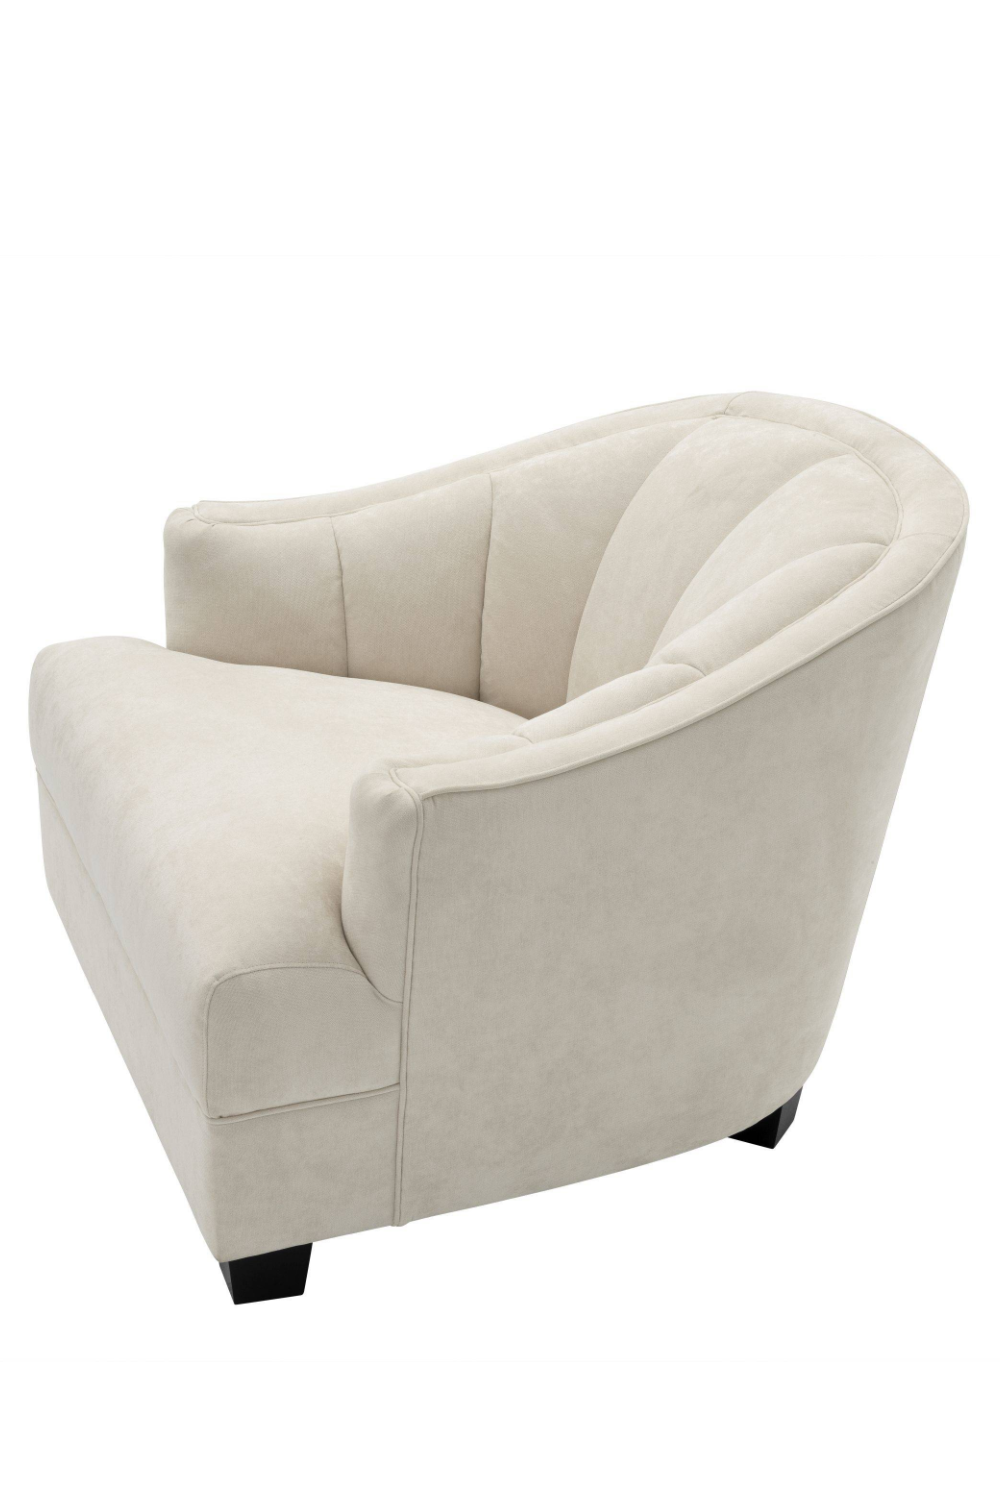 Cream Curved Back Accent Chair | Eichholtz Polaris | Oroa.com